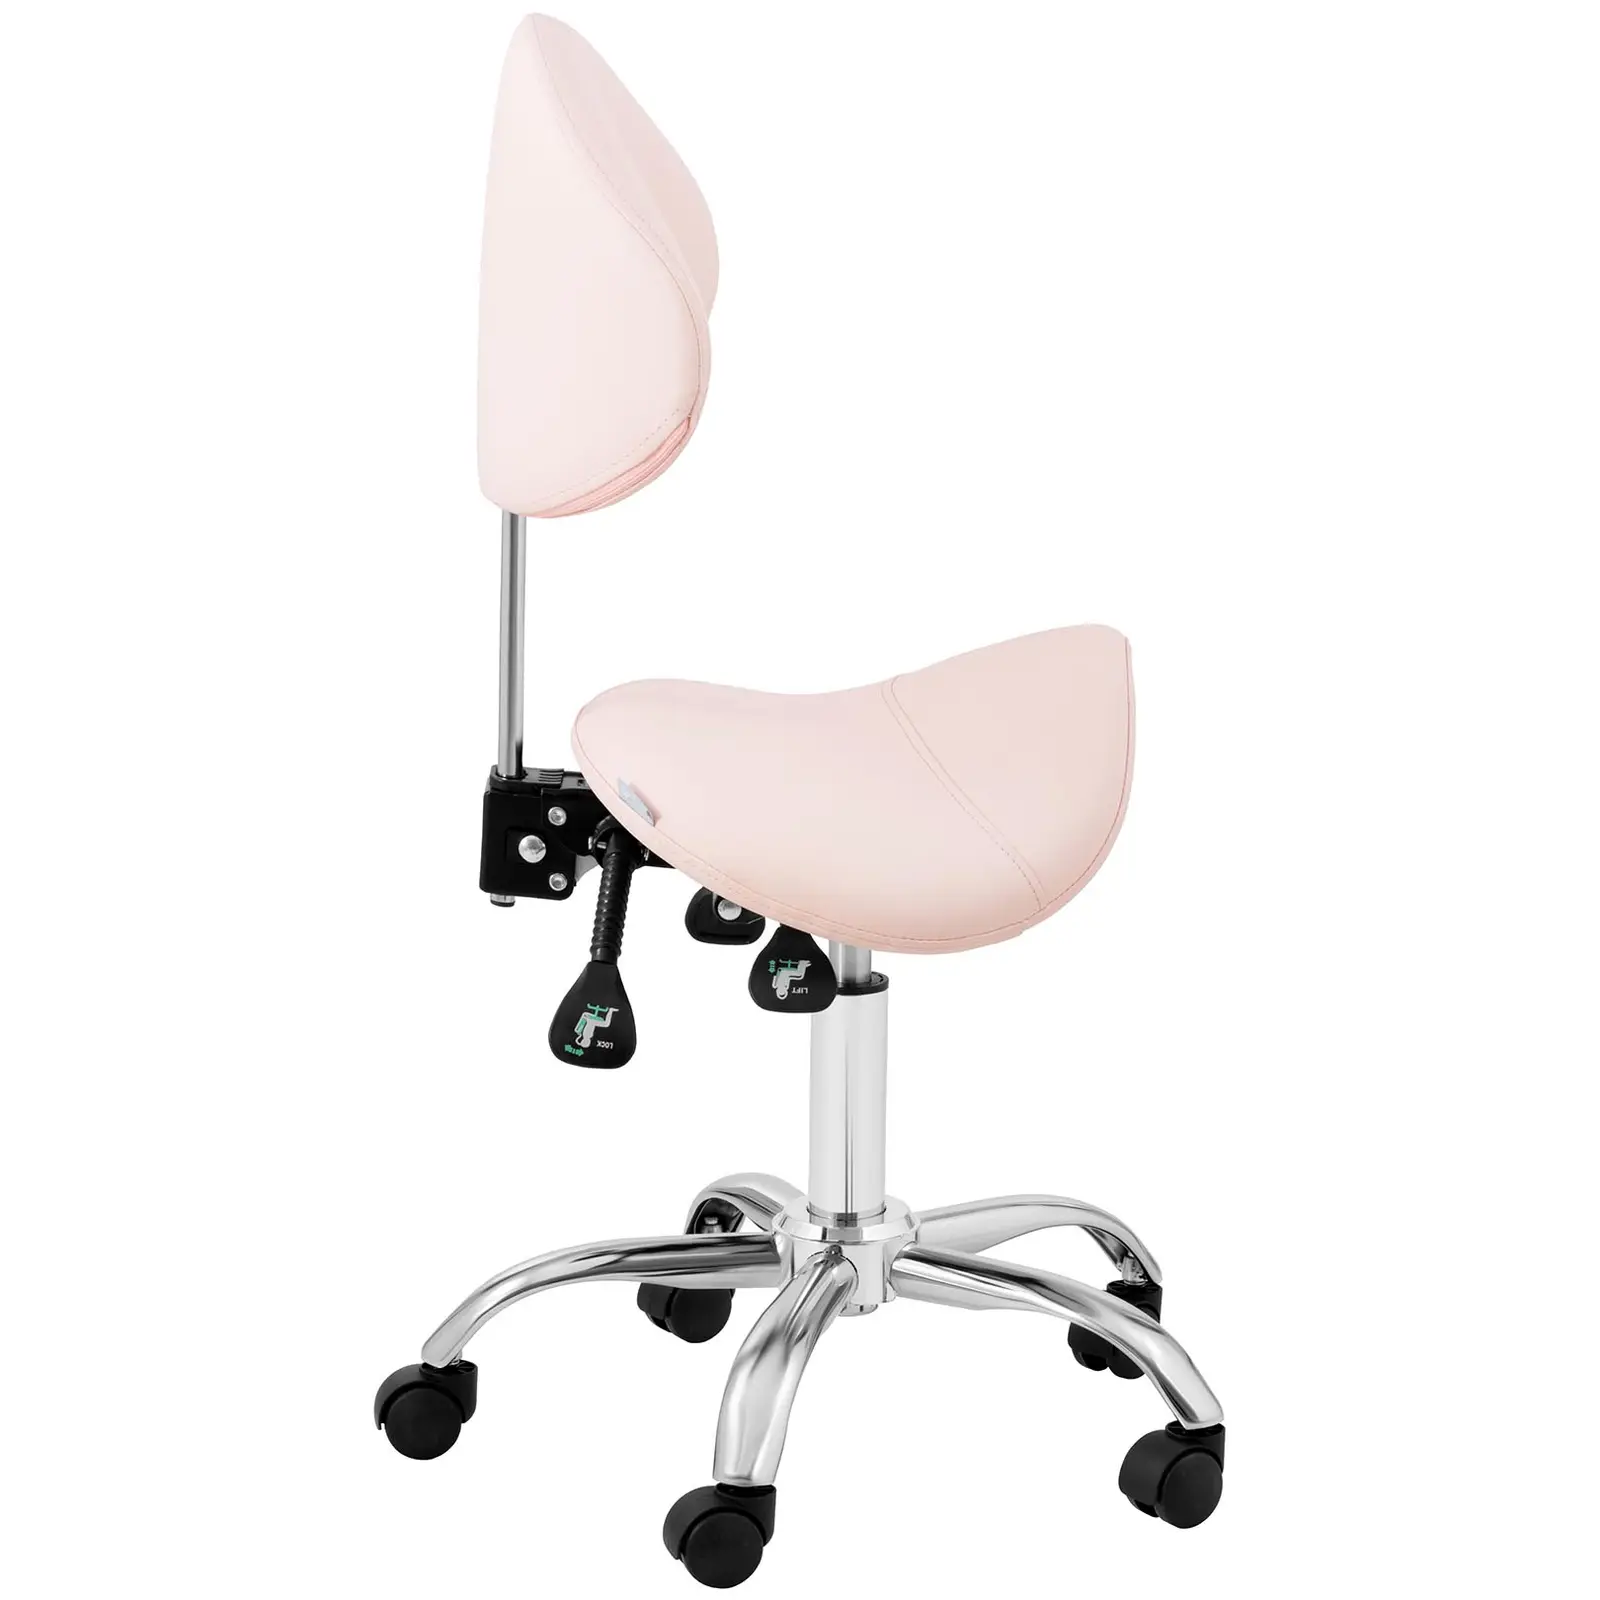 Стол тип седло - регулируема височина на облегалката и седалката - 55 - 69 см - 150 кг - розов, сребърен